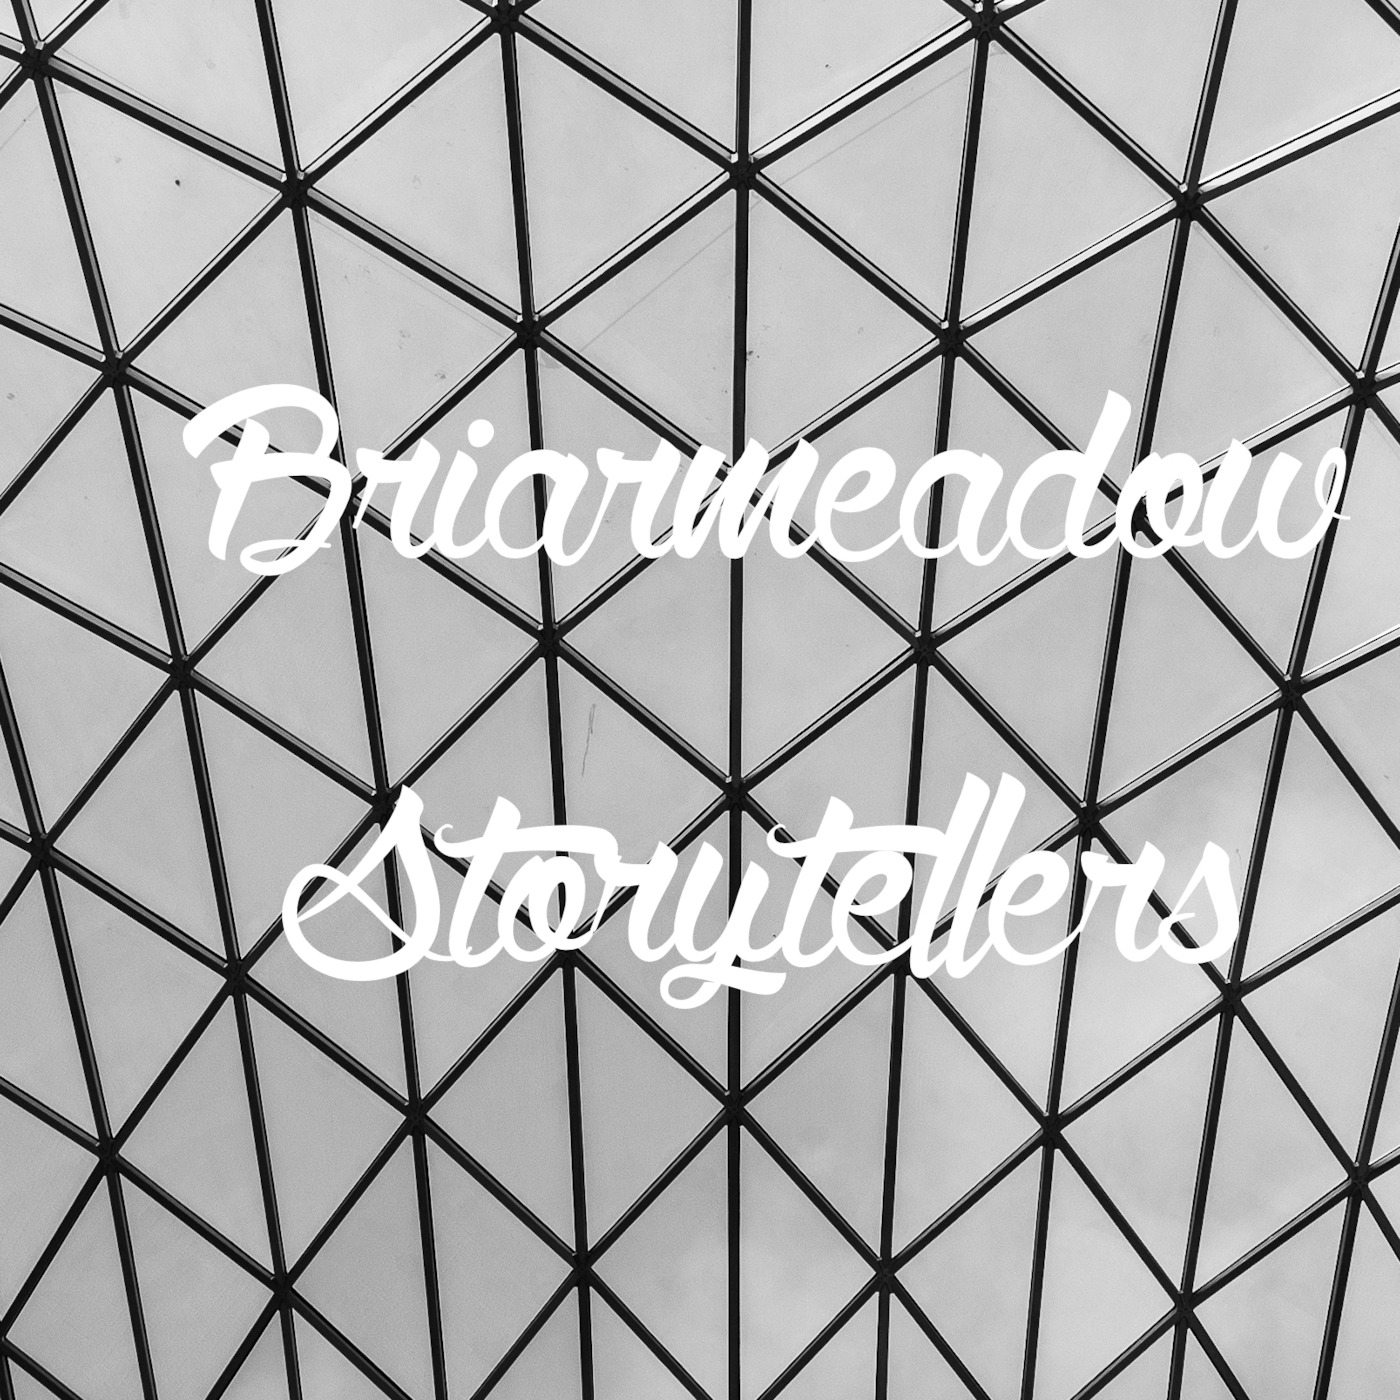 Briarmeadow Storytellers